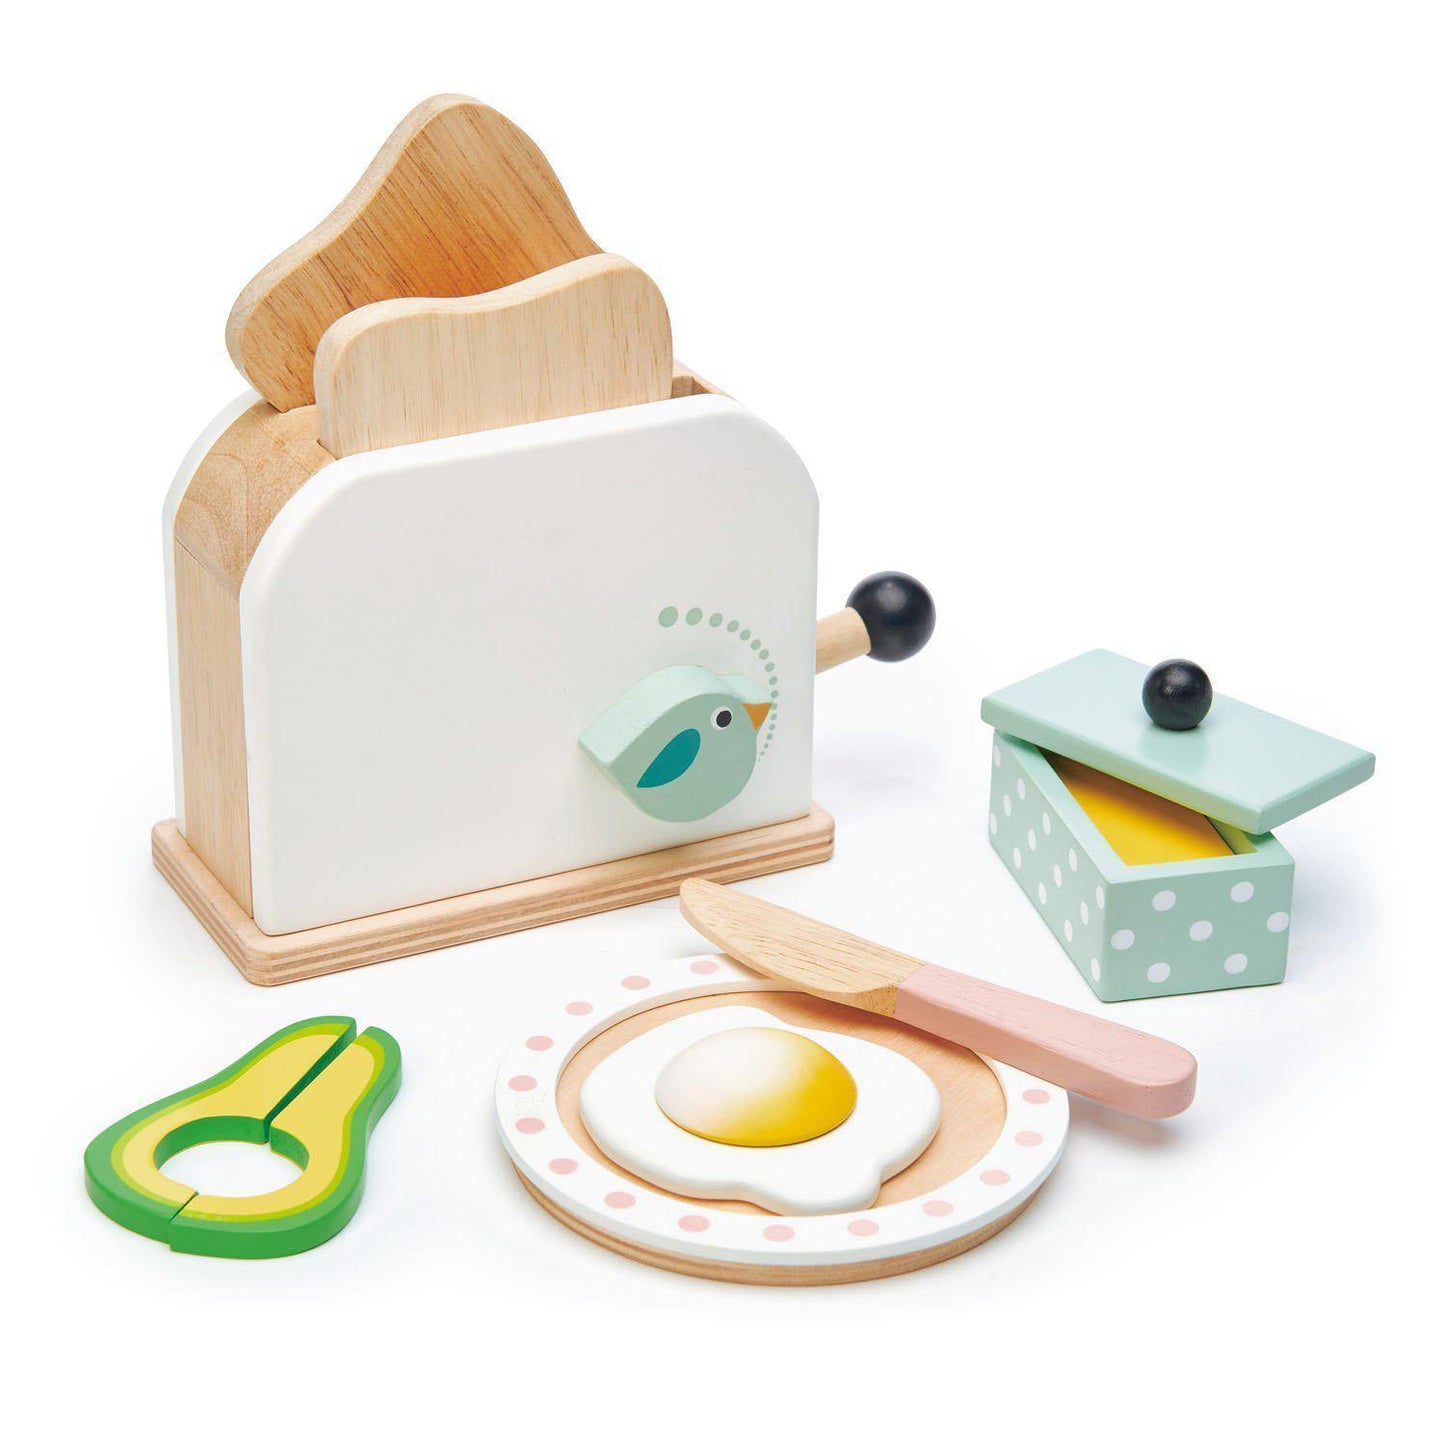 Prăjitor de pâine, din lemn premium - Breakfast toaster - 10 piese, felii de pâine prăjită, ou și accesorii - Tender Leaf Toys-Tender Leaf Toys-1-Jocozaur